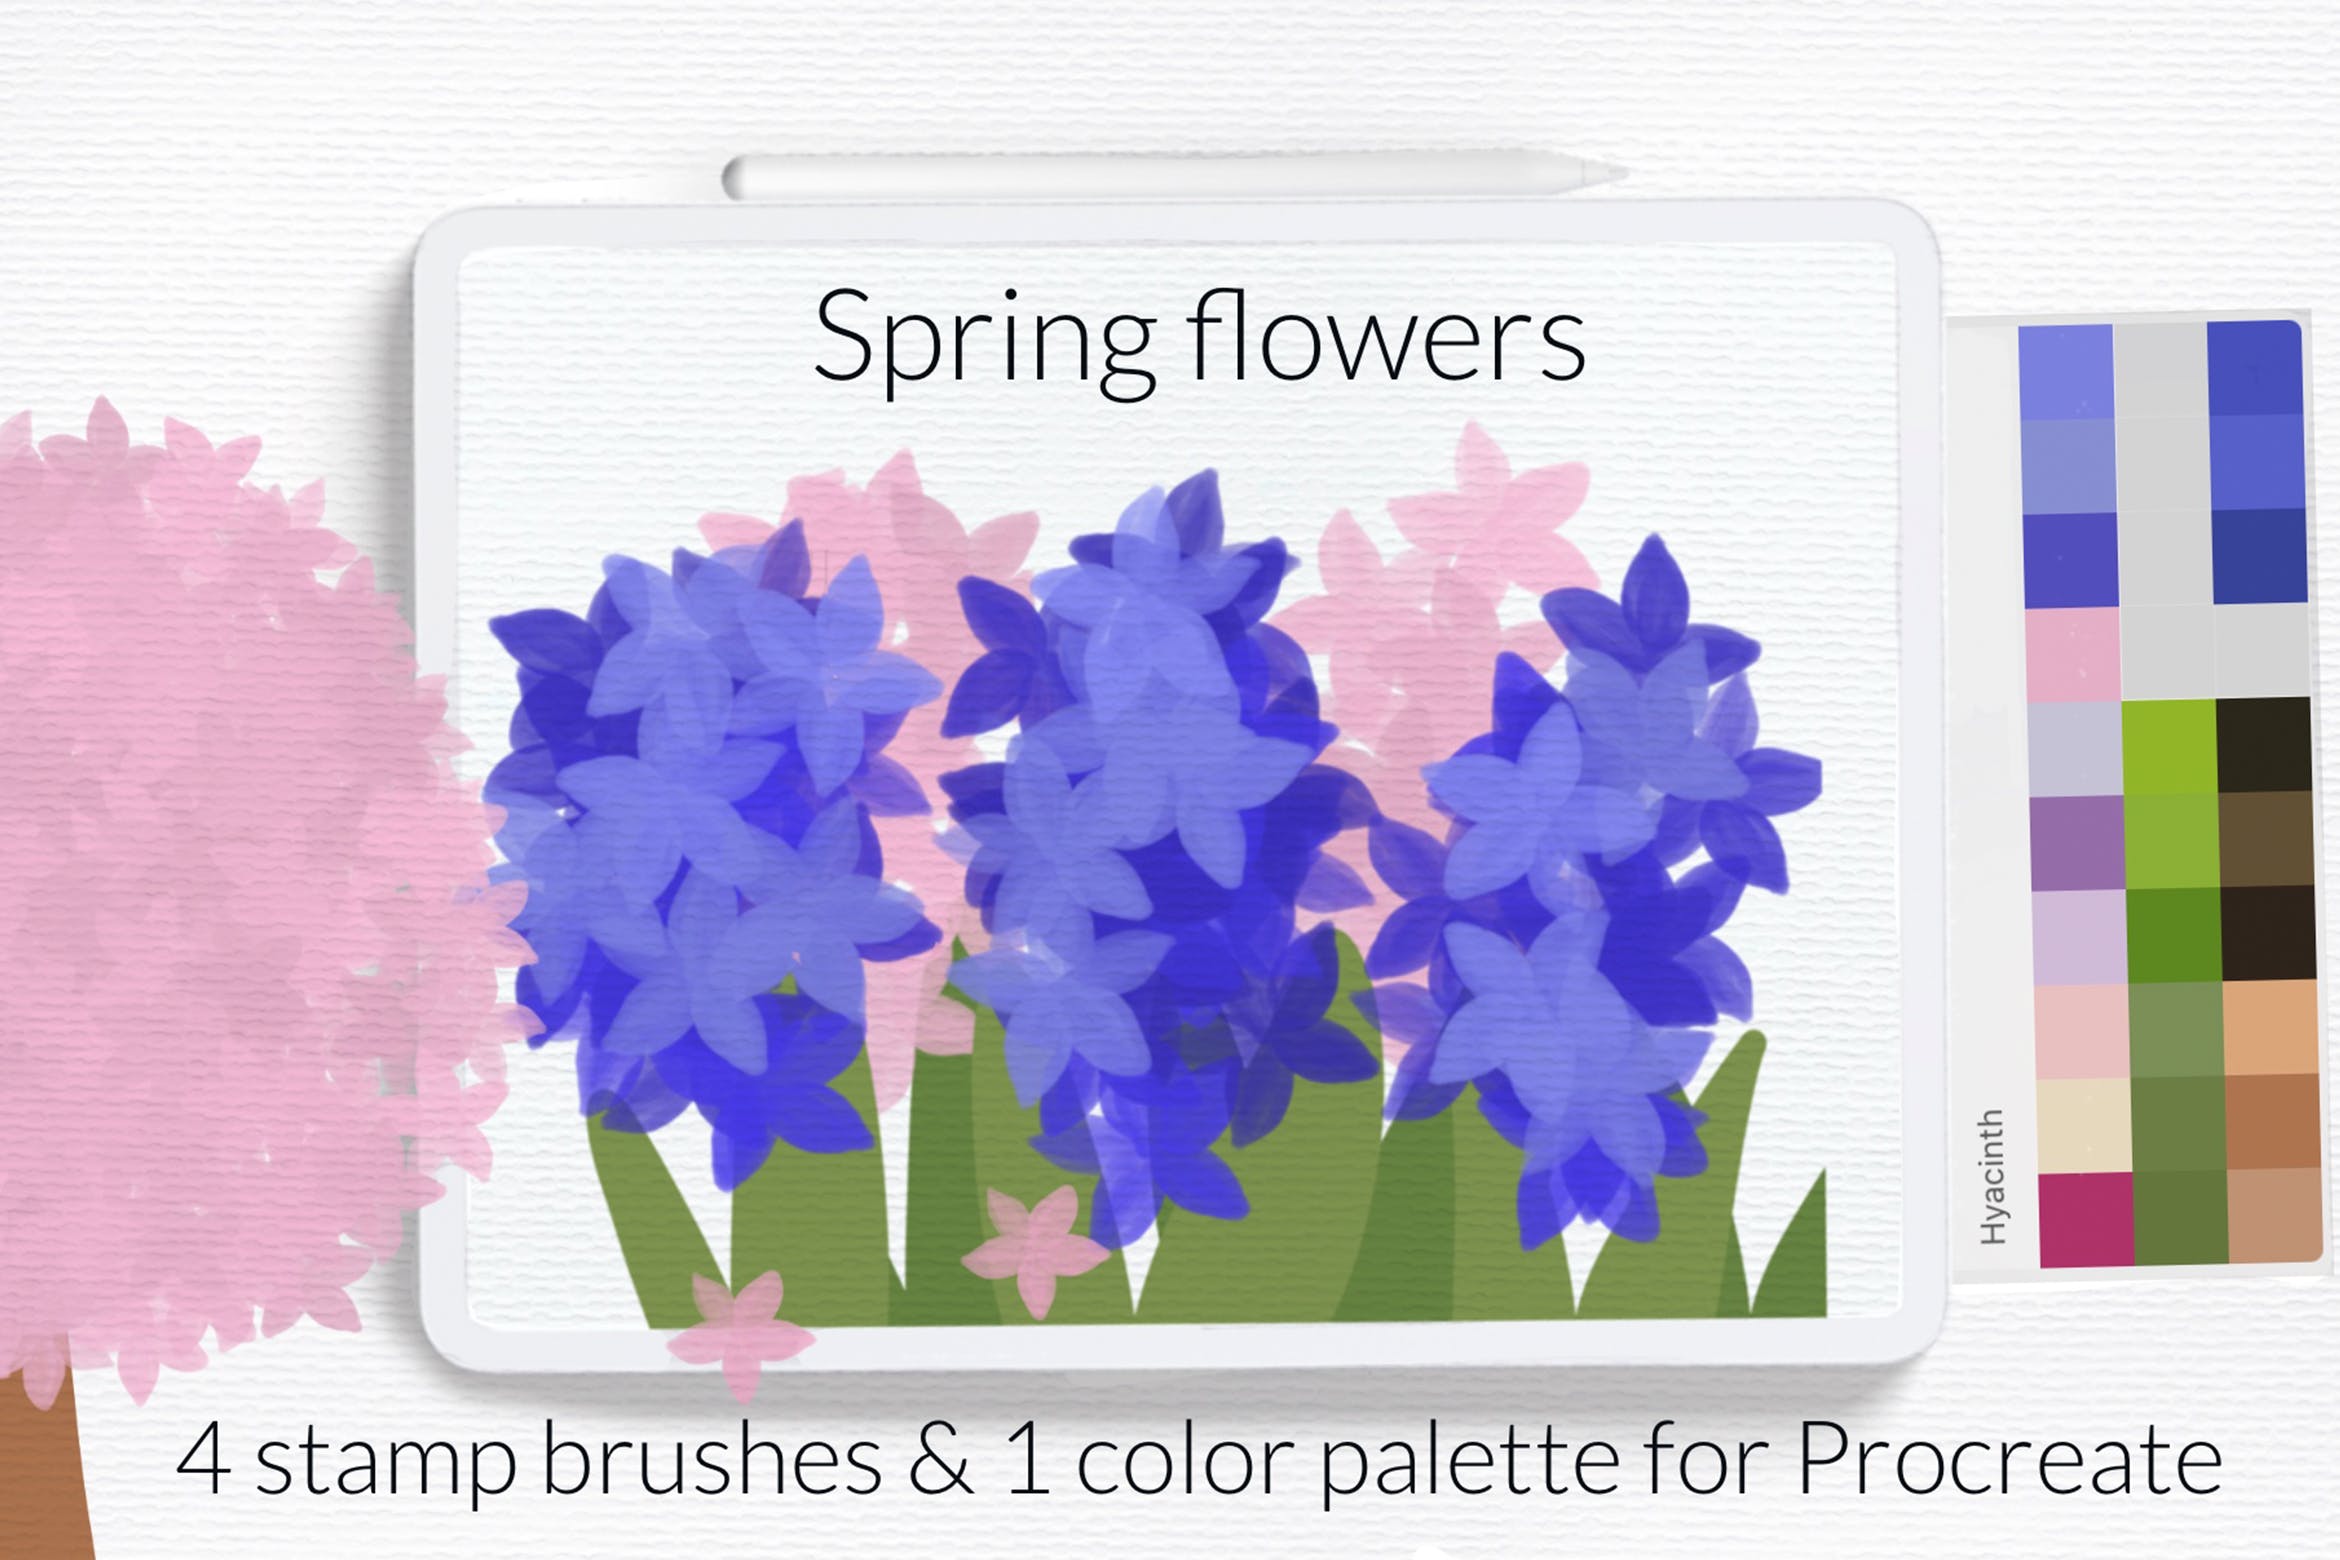 盛开春花Procreate笔刷 Blooming spring flowers Procreate brushes 笔刷资源 第1张